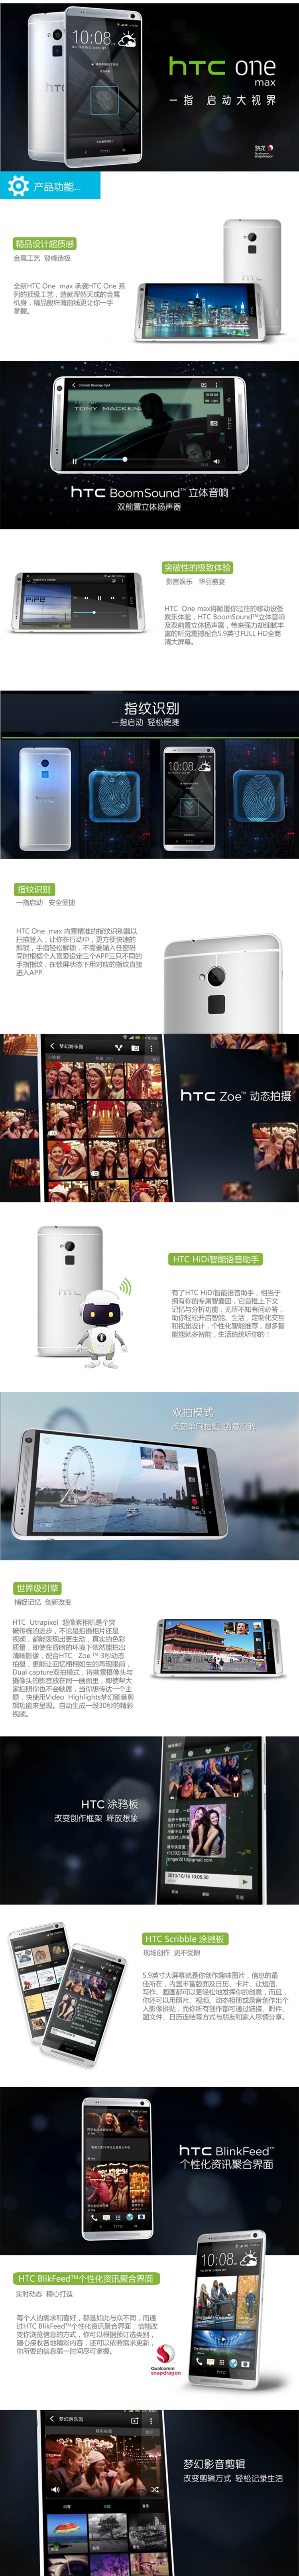 中山手机网 htc(宏达) htc one max 8060联通双卡手机专卖